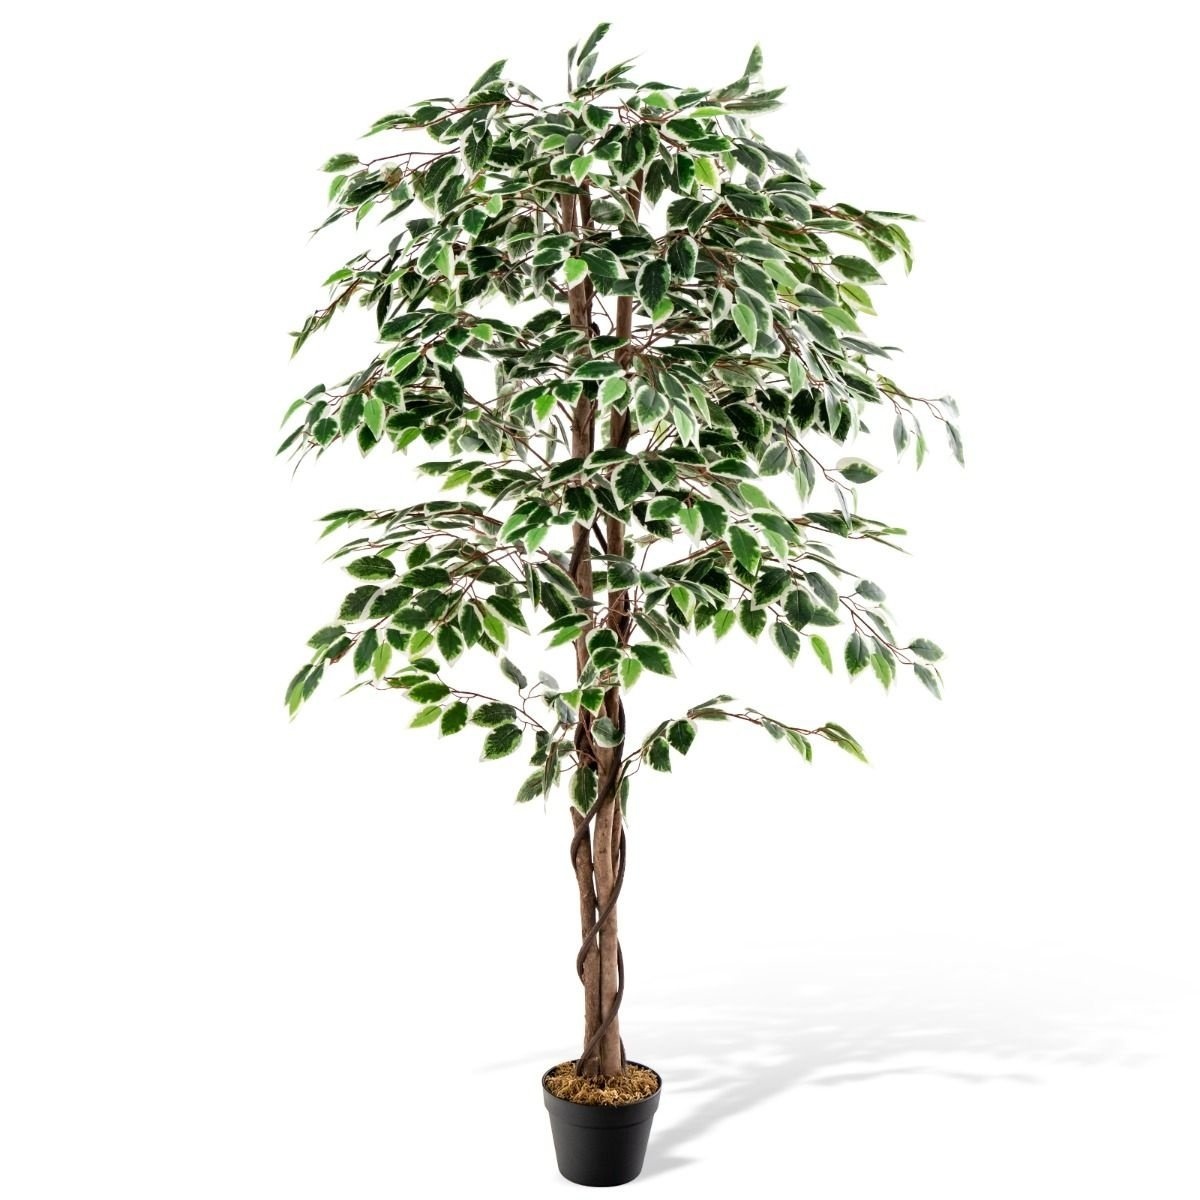 Coast Künstlicher Baum - 1008 Blätter - Wartungsfrei - 160 cm hoch - Grün